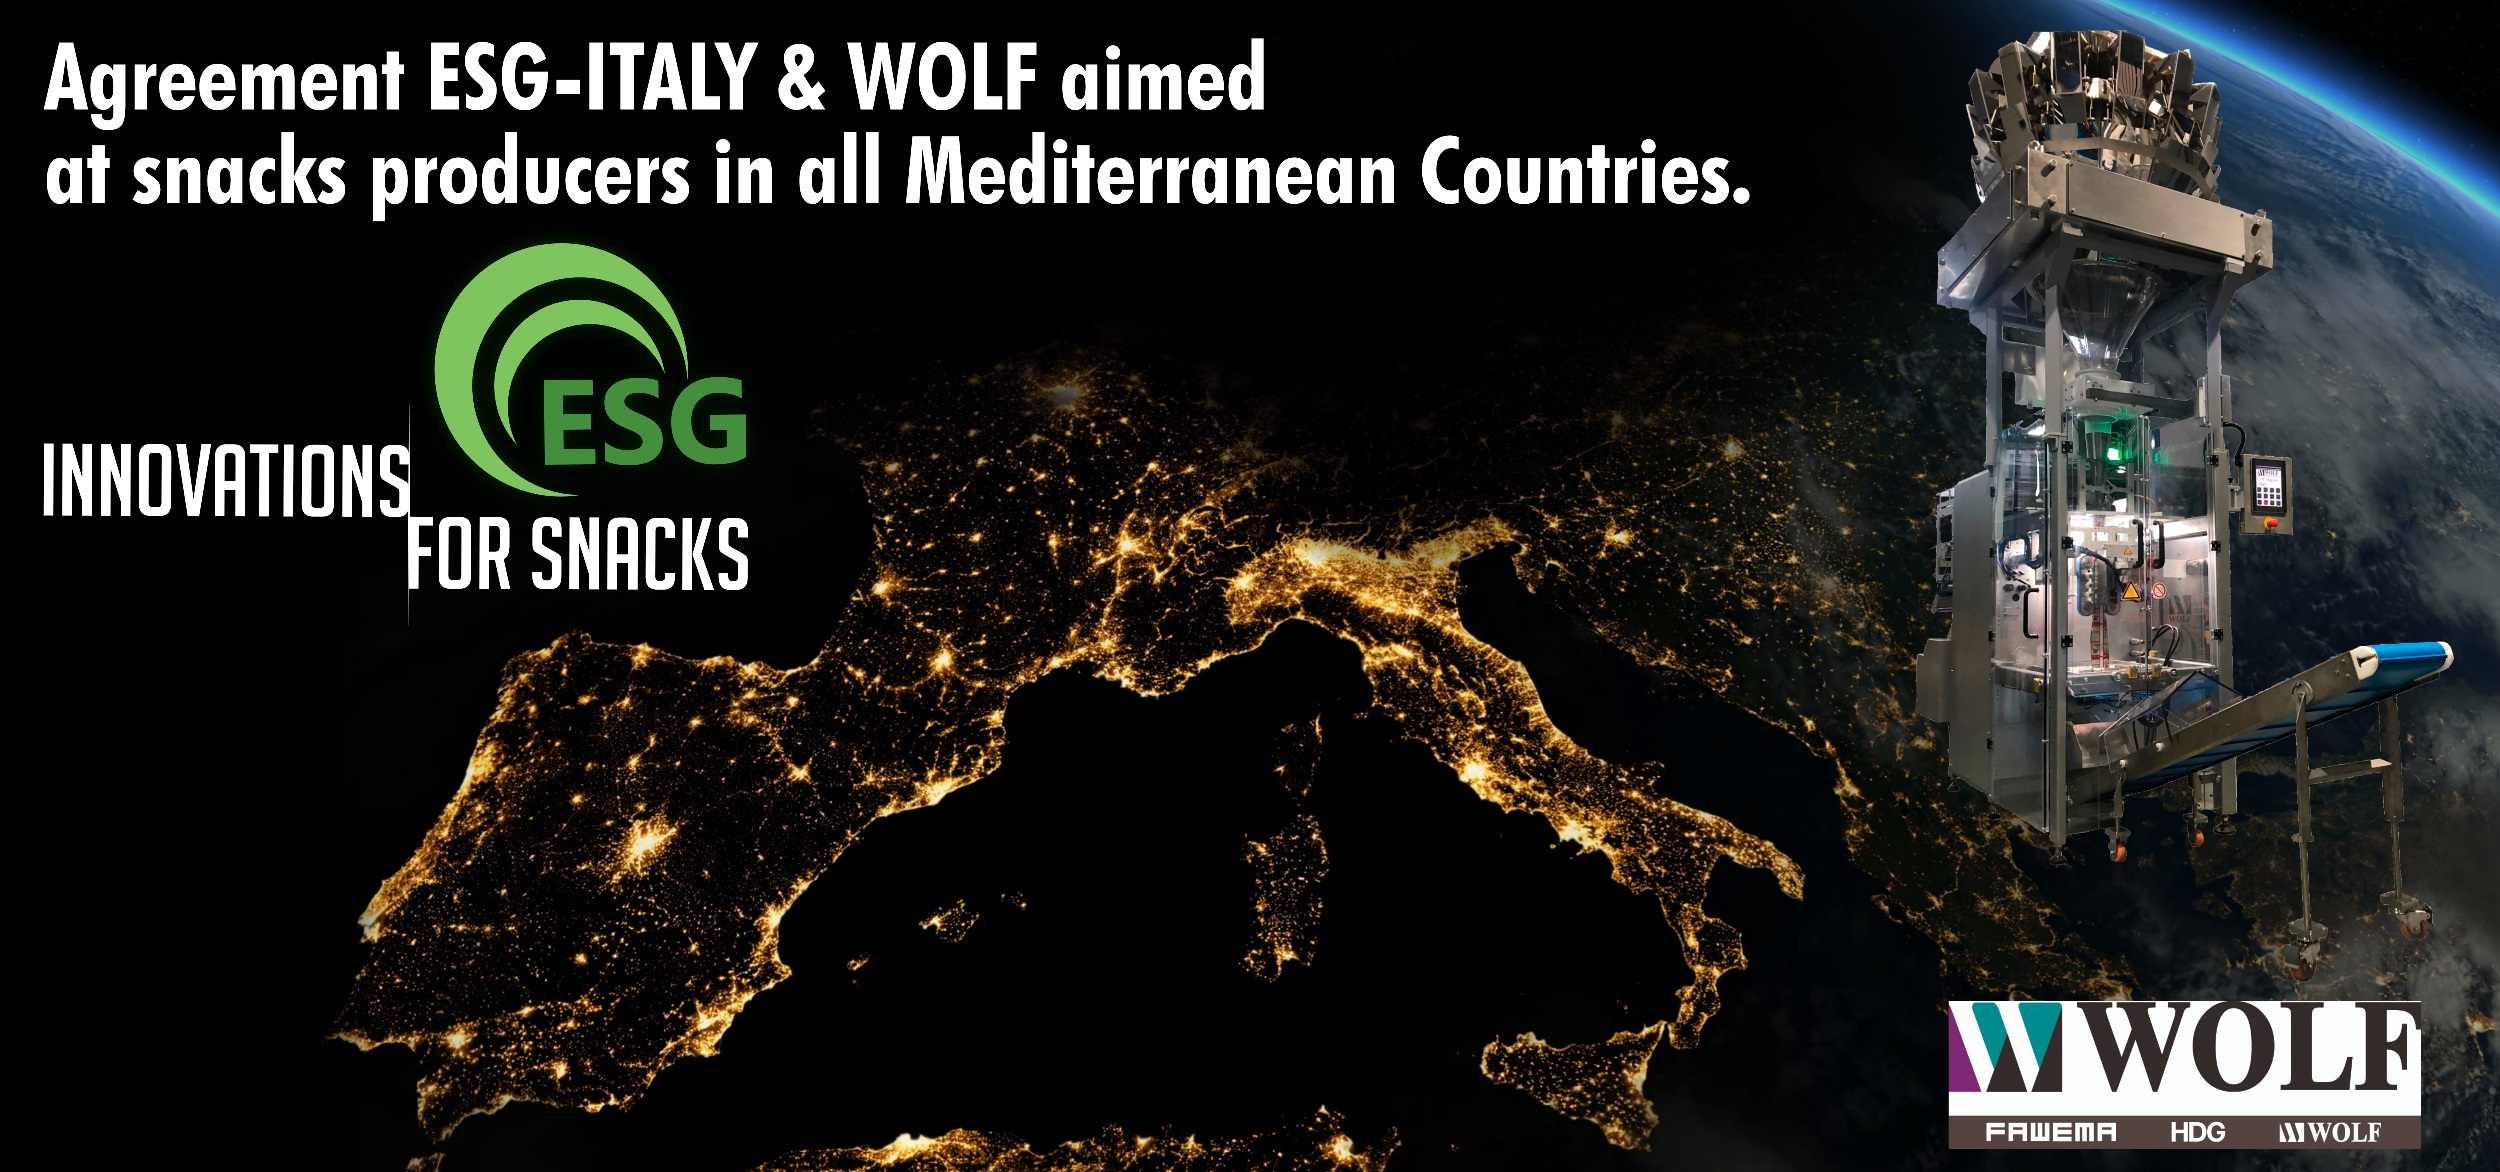 Accordo ESG-ITALY & WOLF rivolto a produttori di snacks in tutti i Paesi del Mediterraneo.